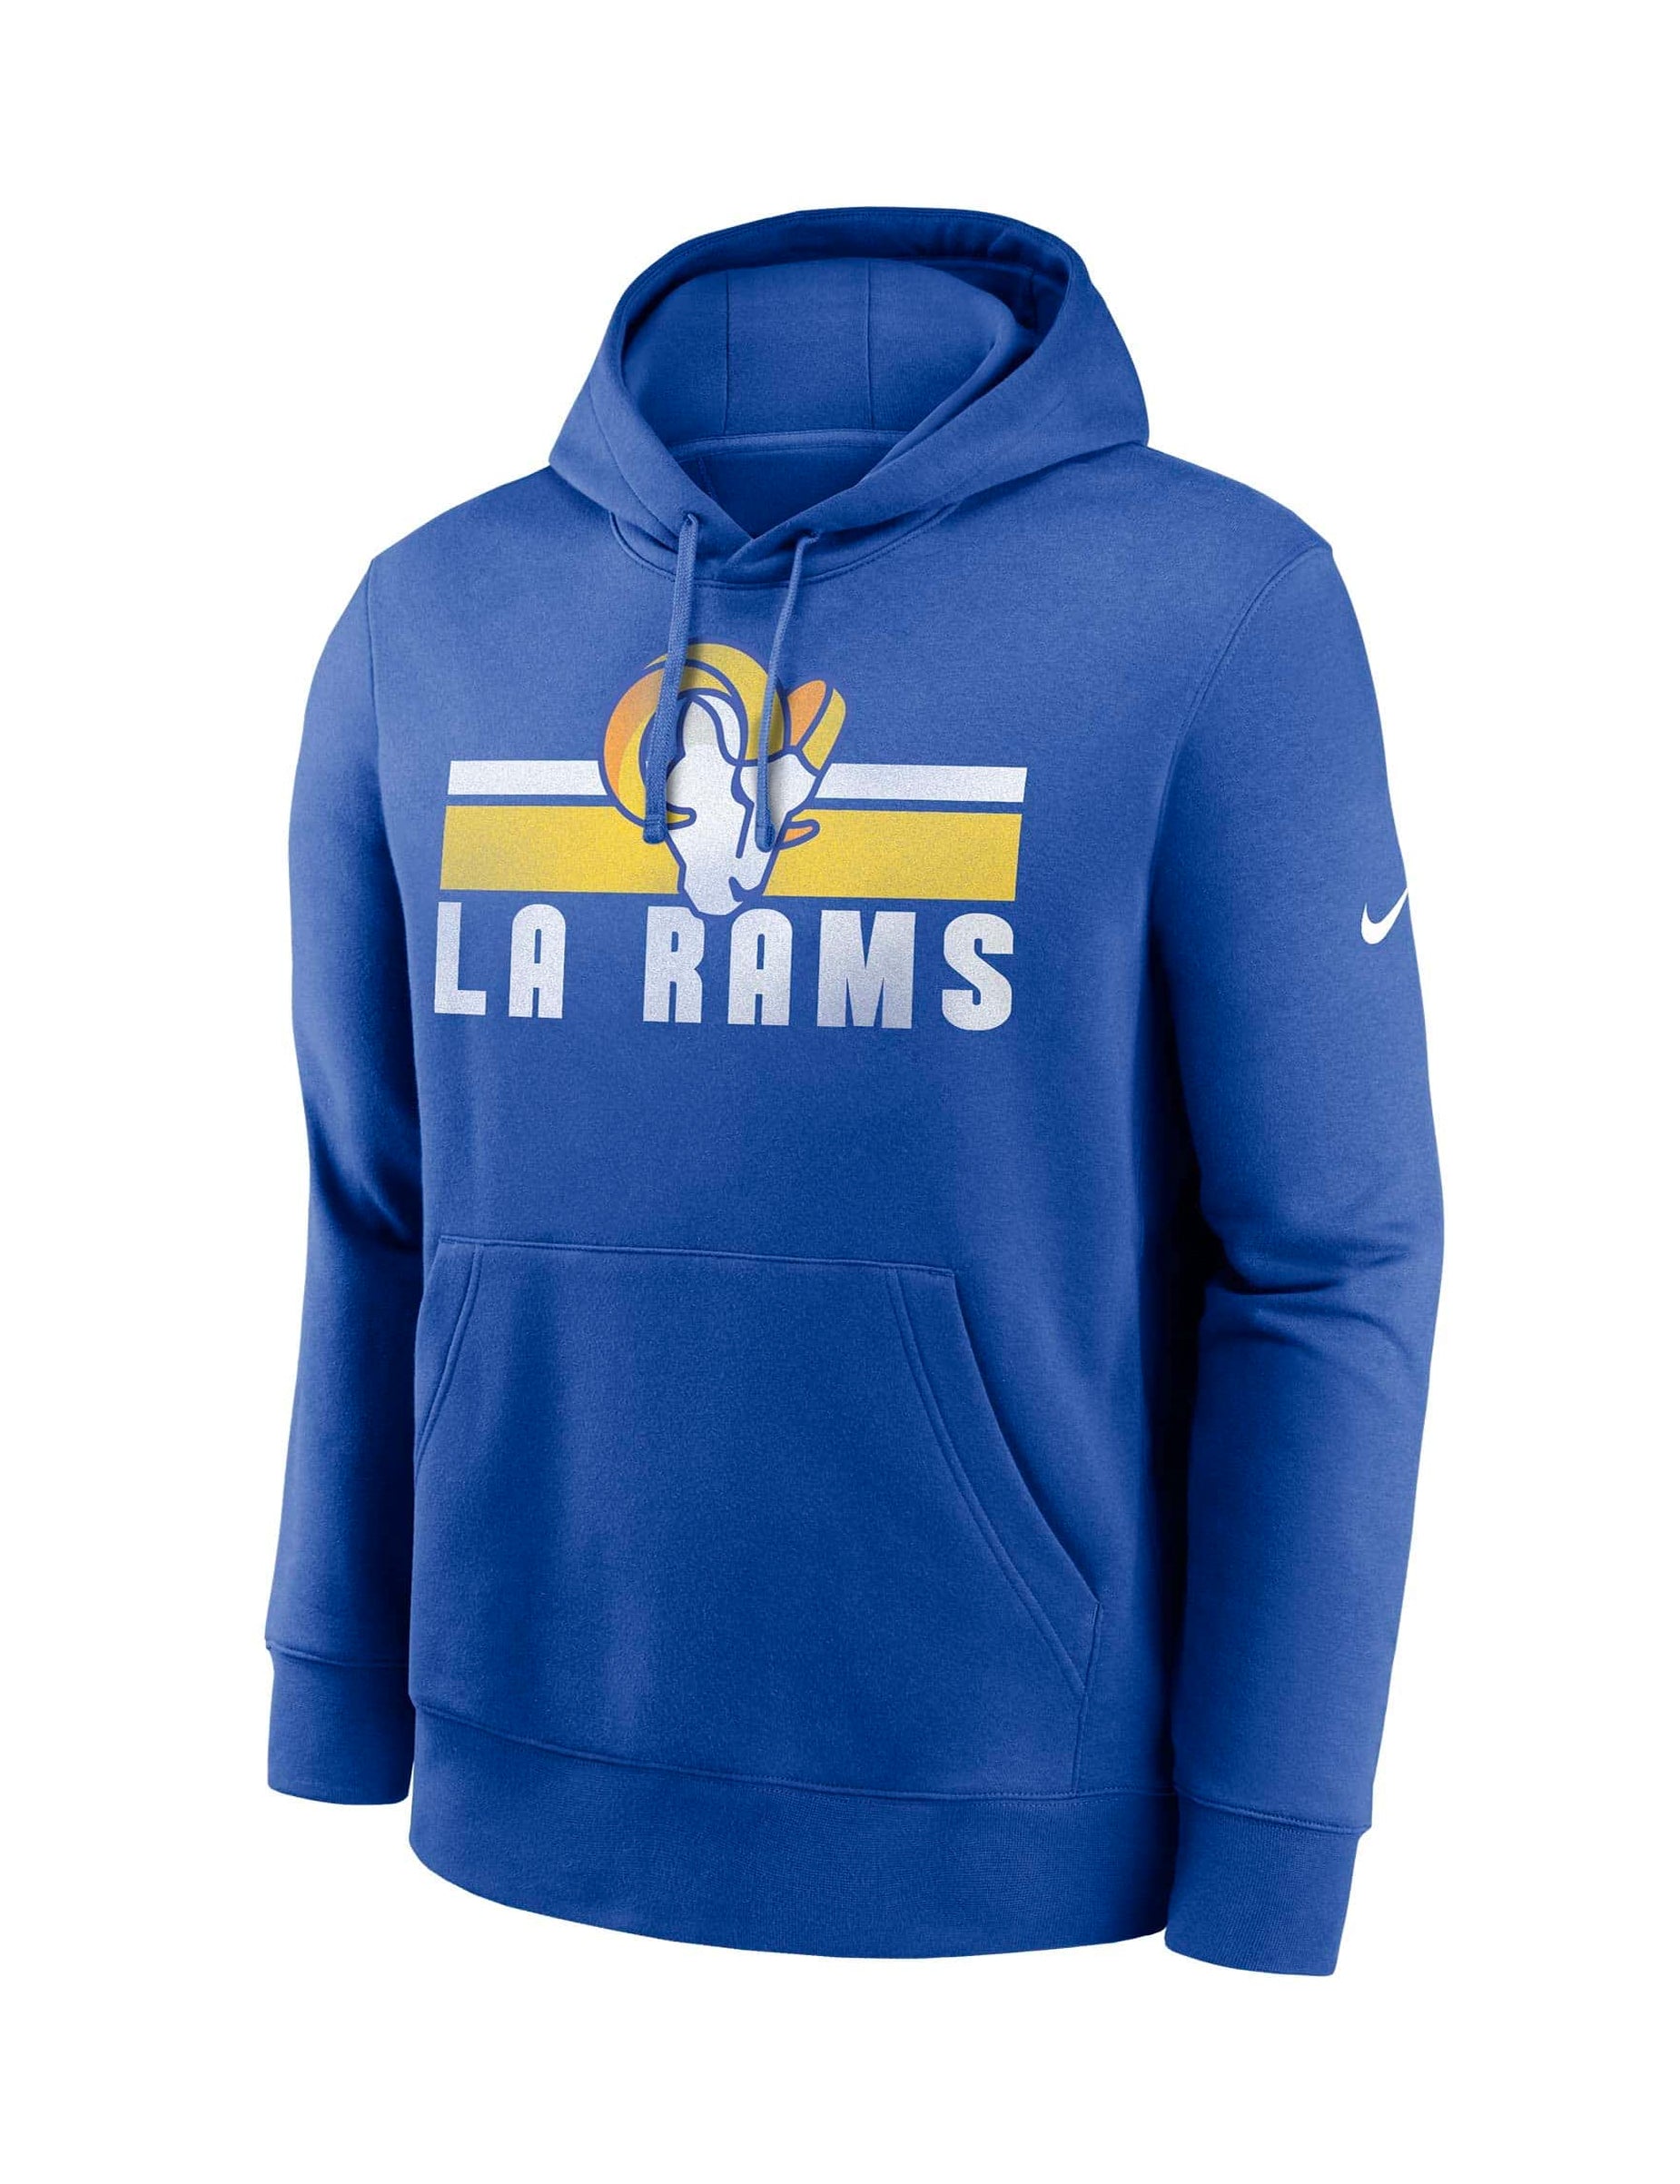 Los Angeles Rams Nike NFL Team Stripes Hoodie Jumper - Blue